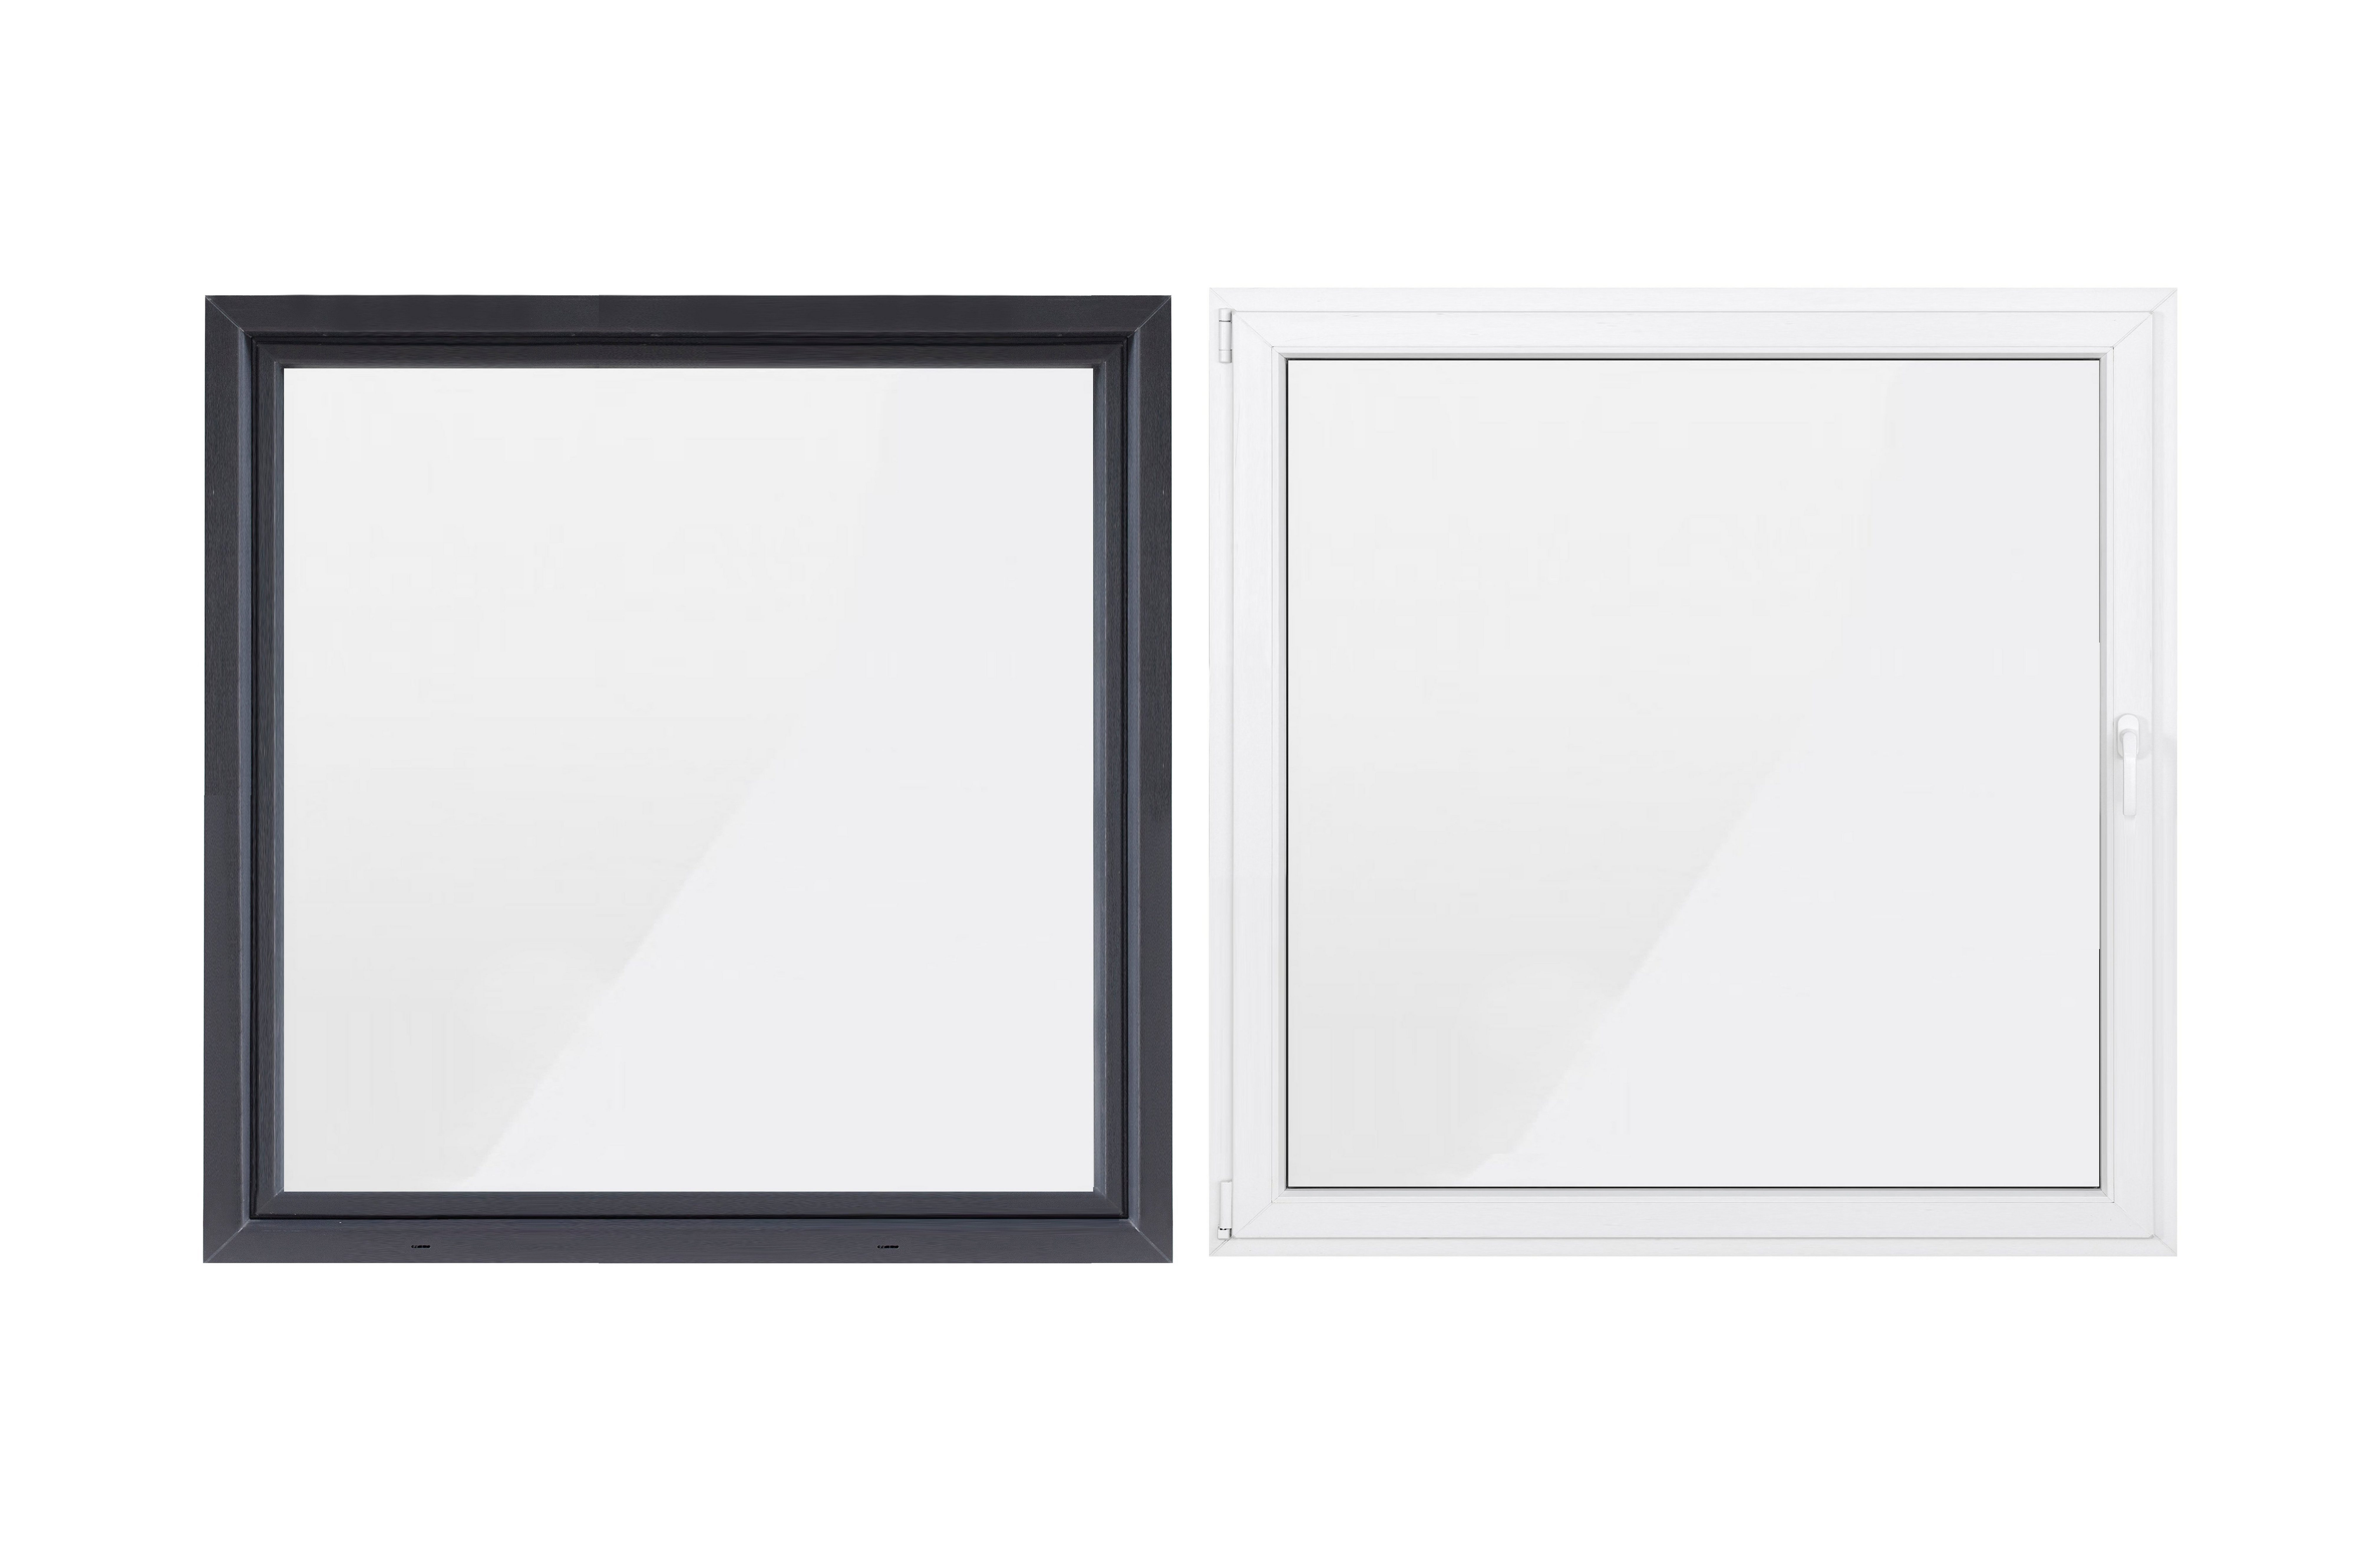 SN DECO GROUP Kellerfenster weiß, (Set), anthrazit/innen Profil, RC2 Flügel, außen 1000x1000, 5-Kammer-Profil Sicherheitsbeschlag, mm 1 70 Hochwertiges